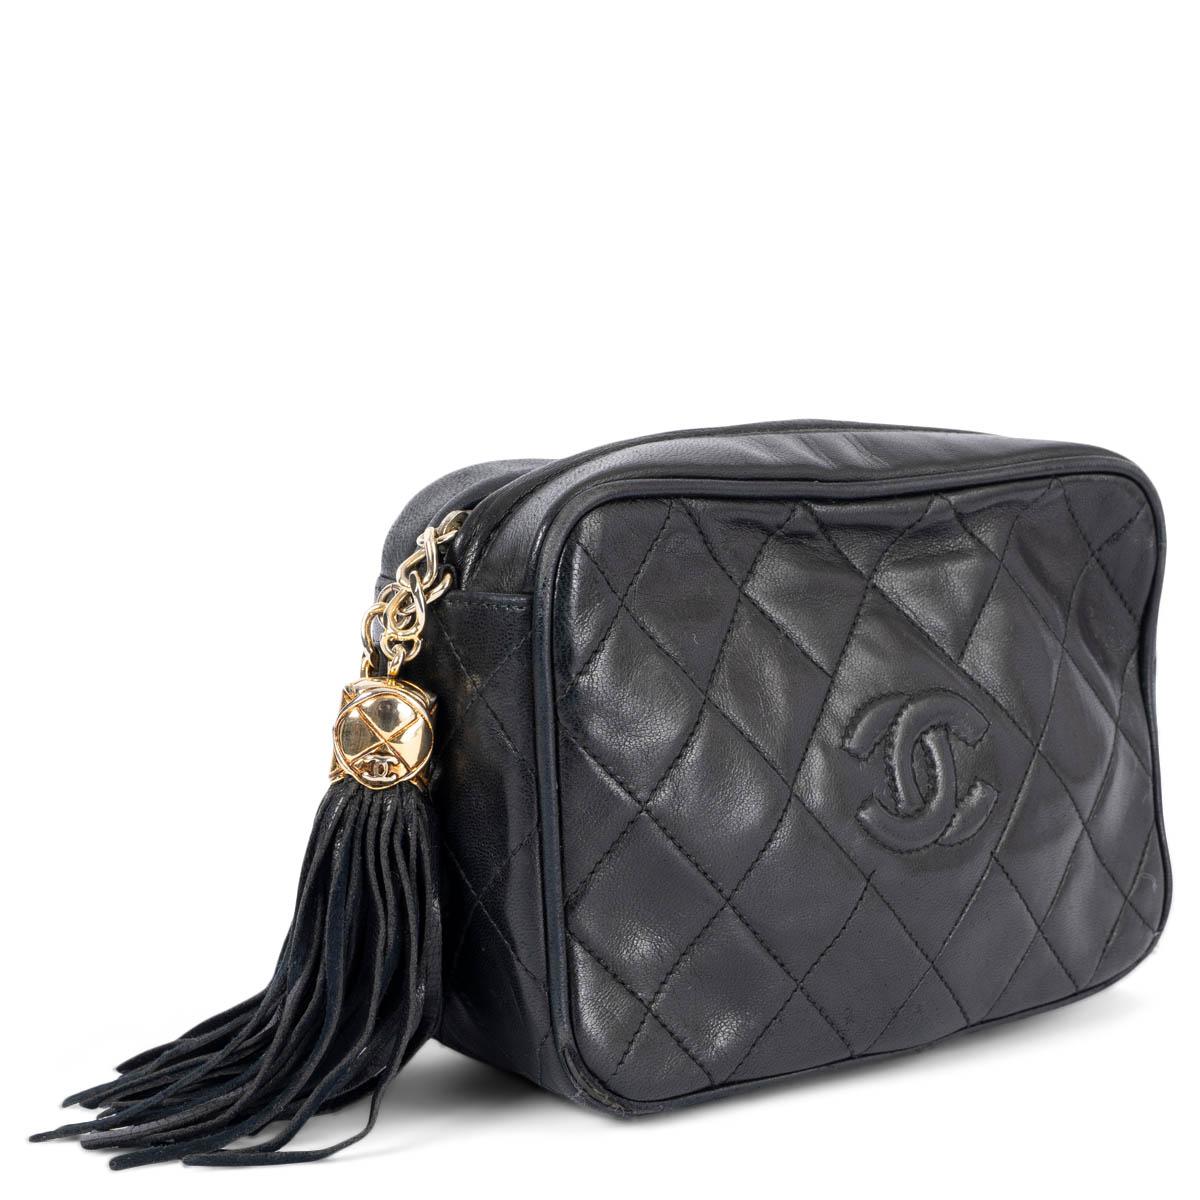 100% authentique Chanel sac à bandoulière matelassé avec logo sur le devant, en cuir d'agneau lisse noir, orné de ferrures dorées. Il s'ouvre par une fermeture à glissière à pompon sur le dessus et est doublé de cuir noir avec une poche à glissière